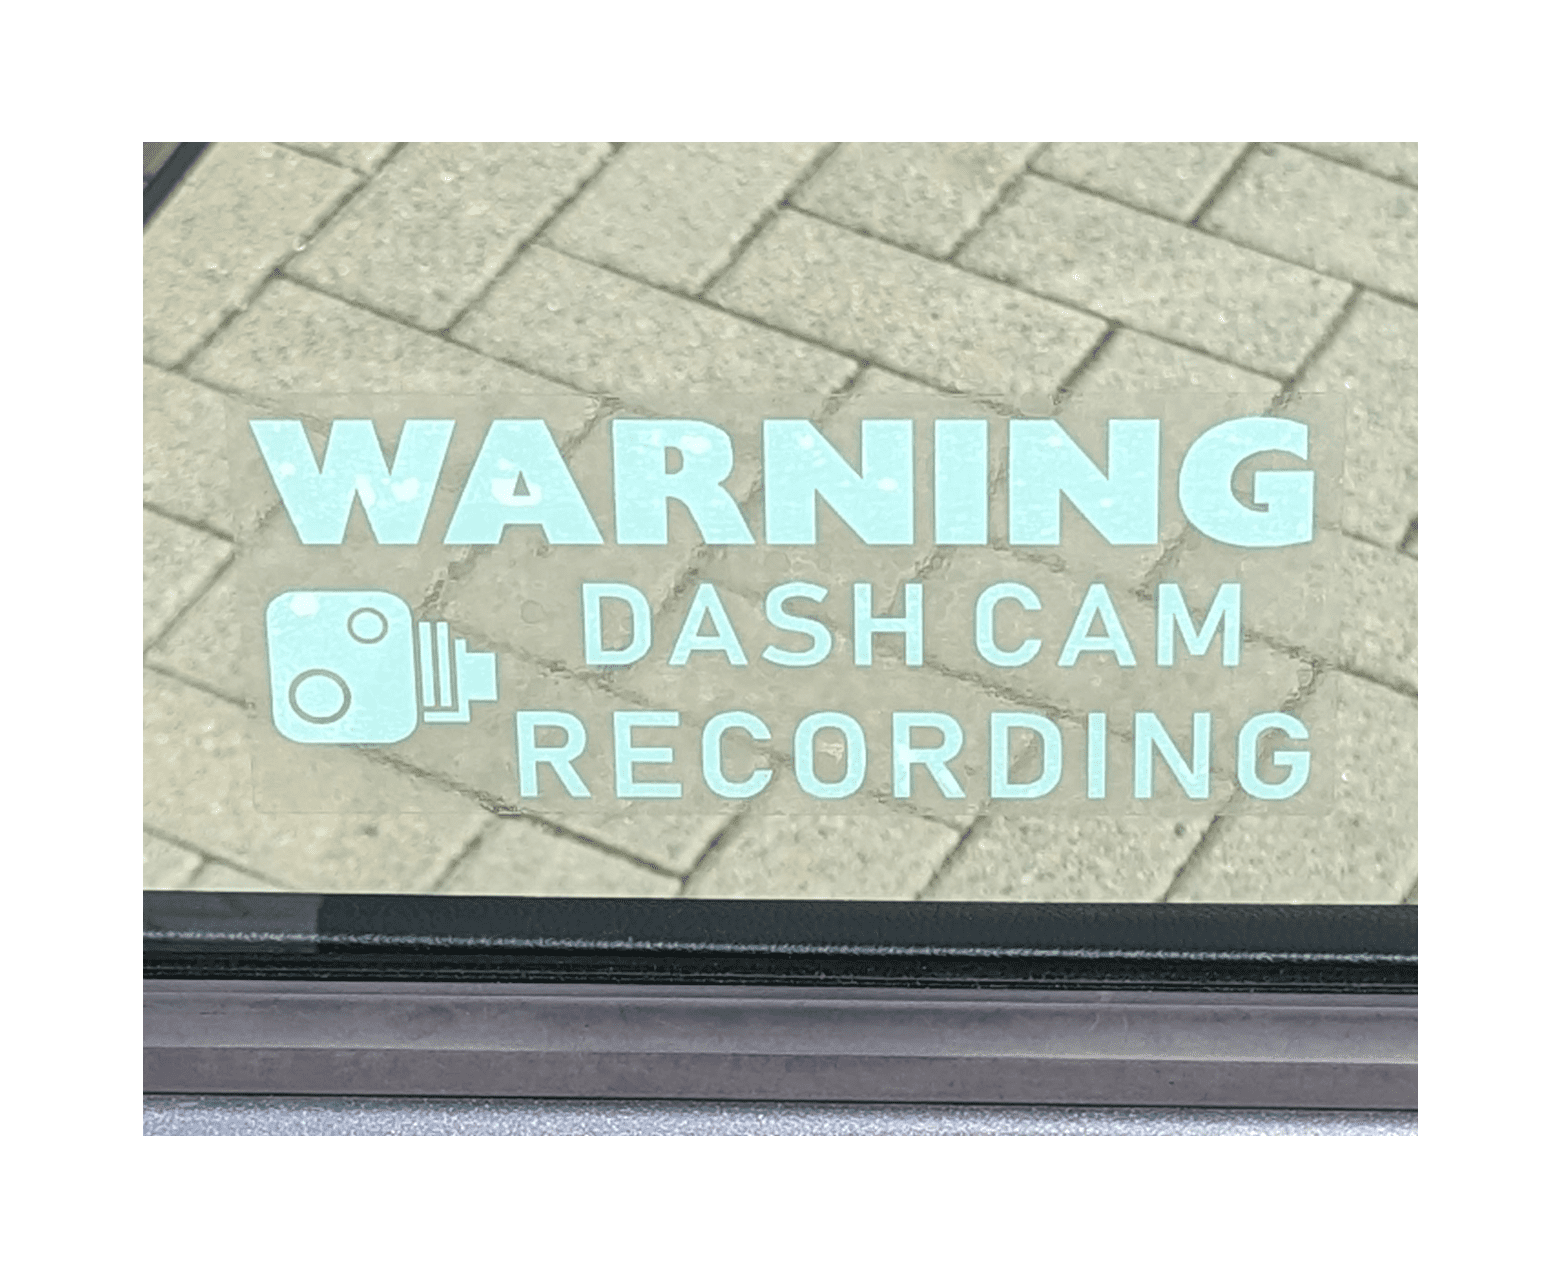 Autocollant voiture AVERTISSEMENT Dashcam Enregistrement blanc - 203x85mm - vitre intérieure